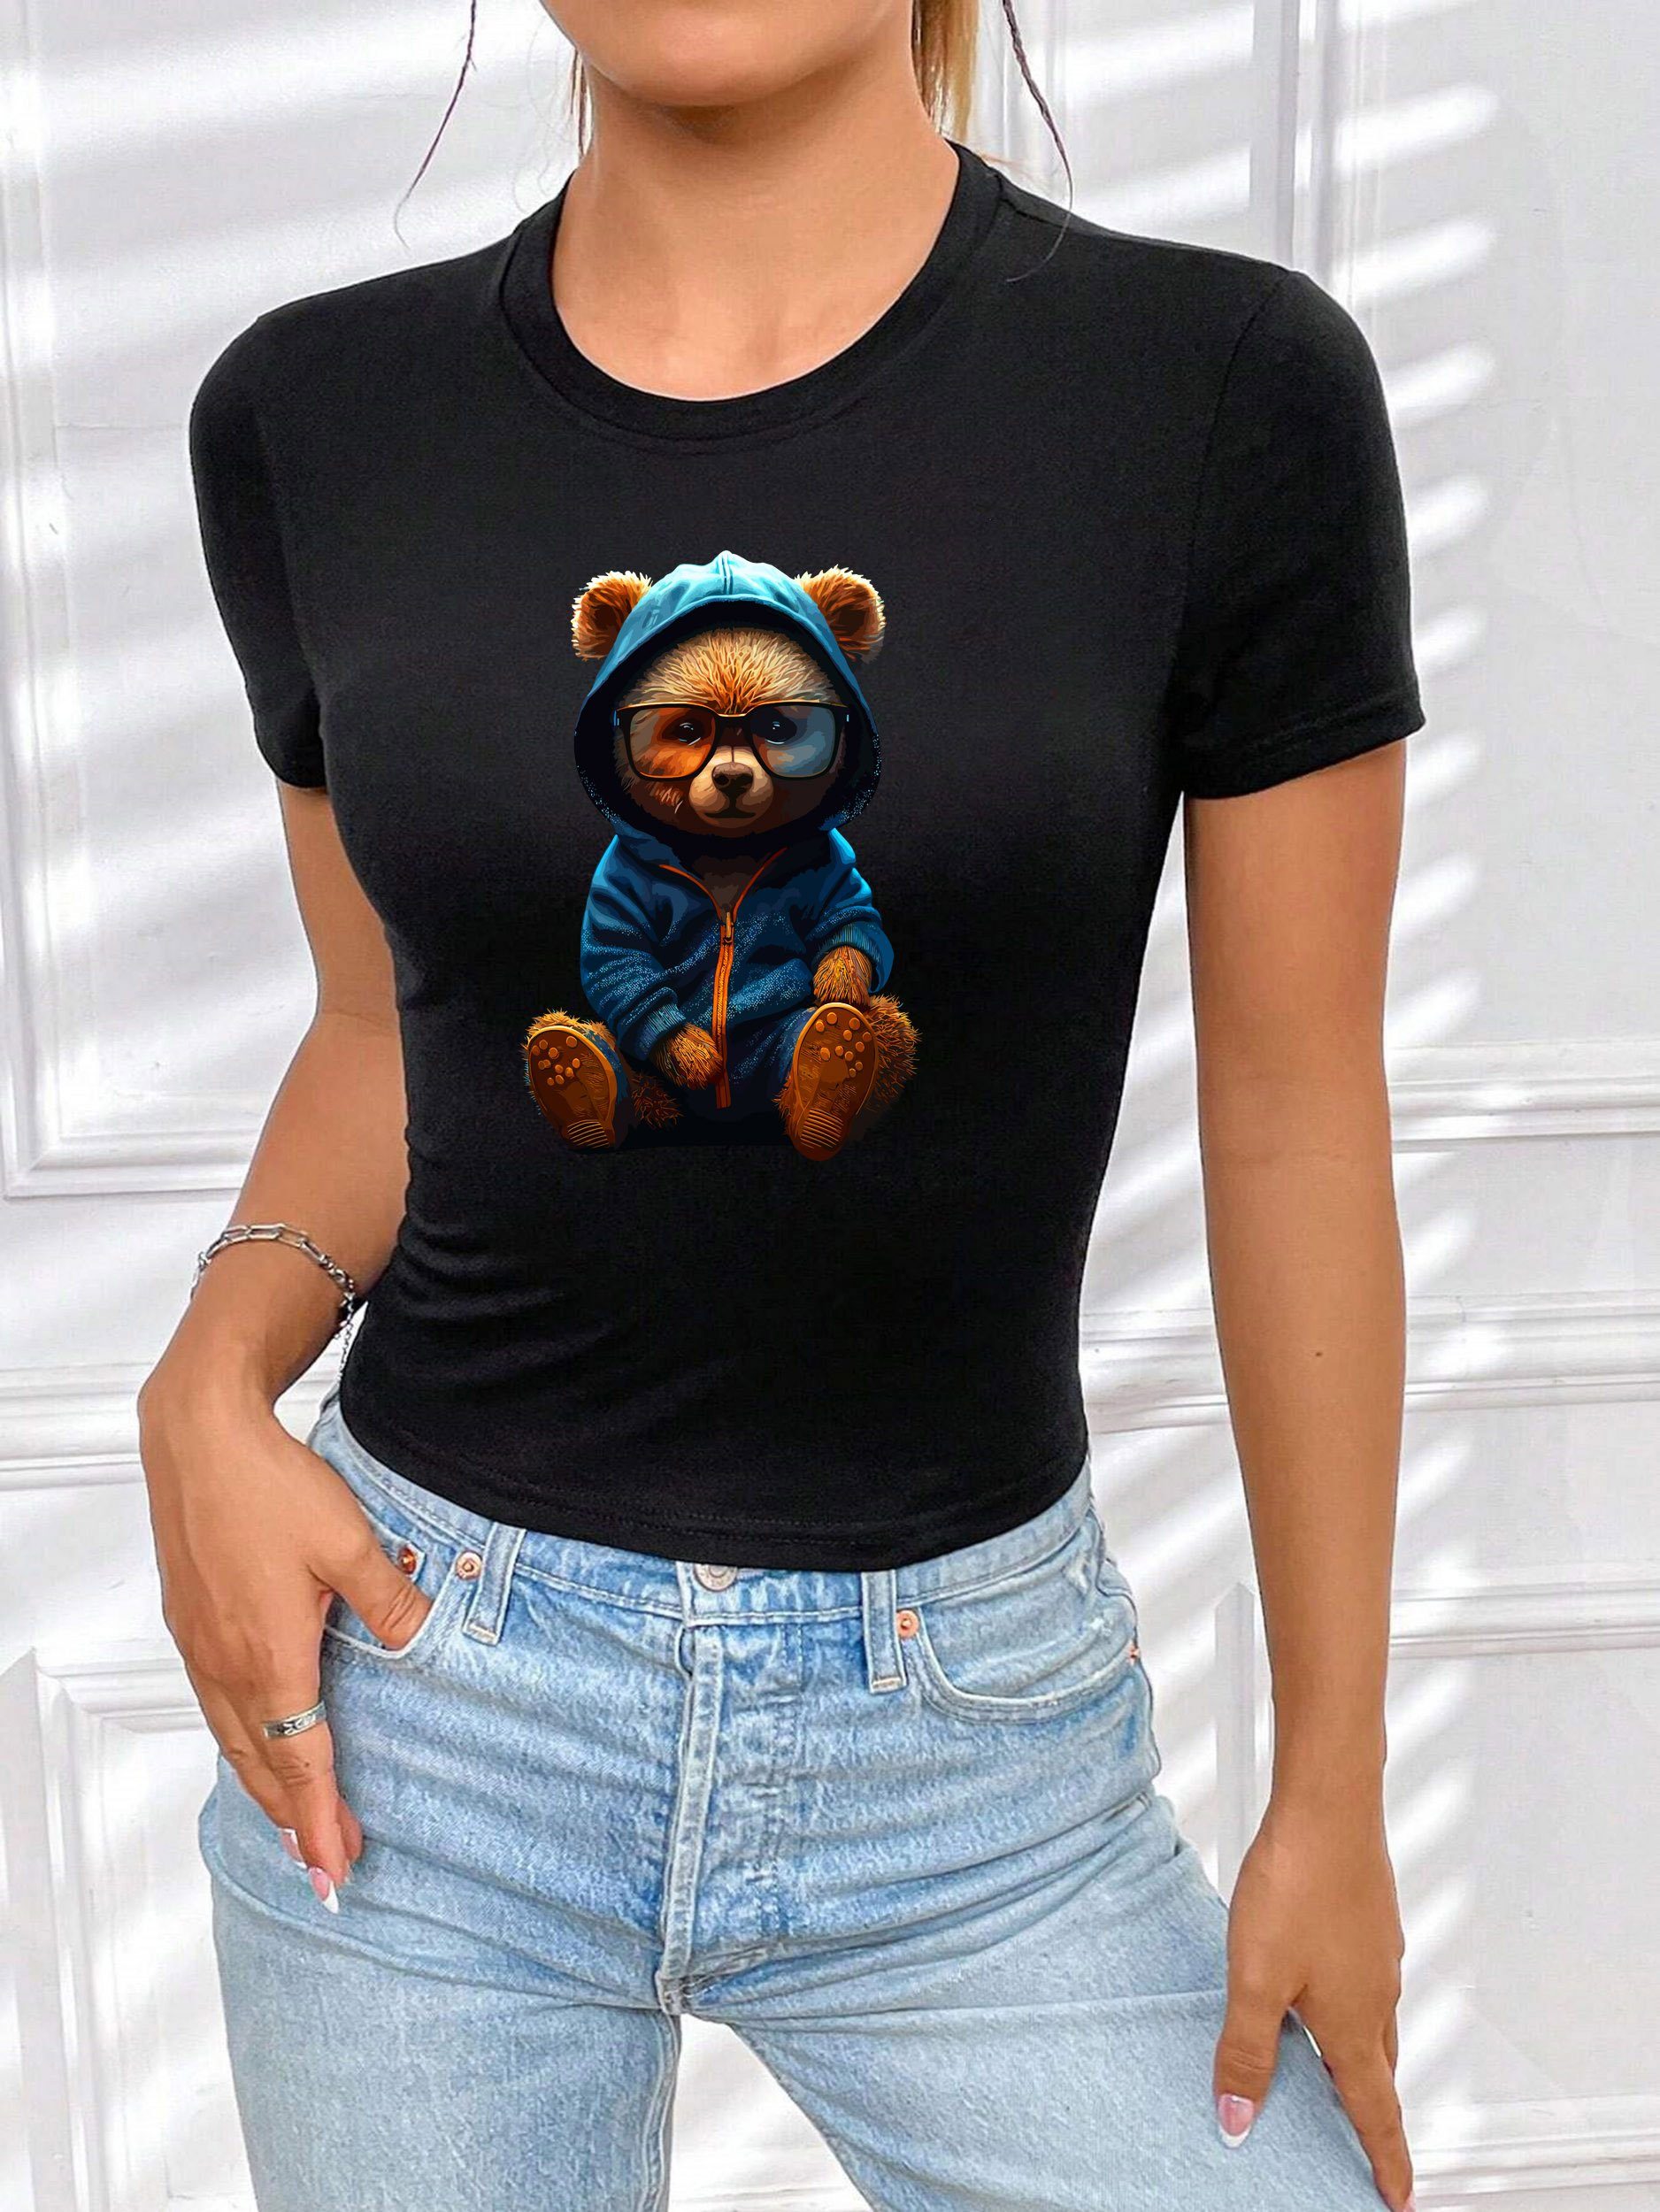 RMK Print-Shirt Damen T-Shirt Top Sommer Rundhals süßer Teddybär Bär Brille mit lizenziertem Originaldesign, aus Baumwolle, Unifarbe Schwarz-Blau